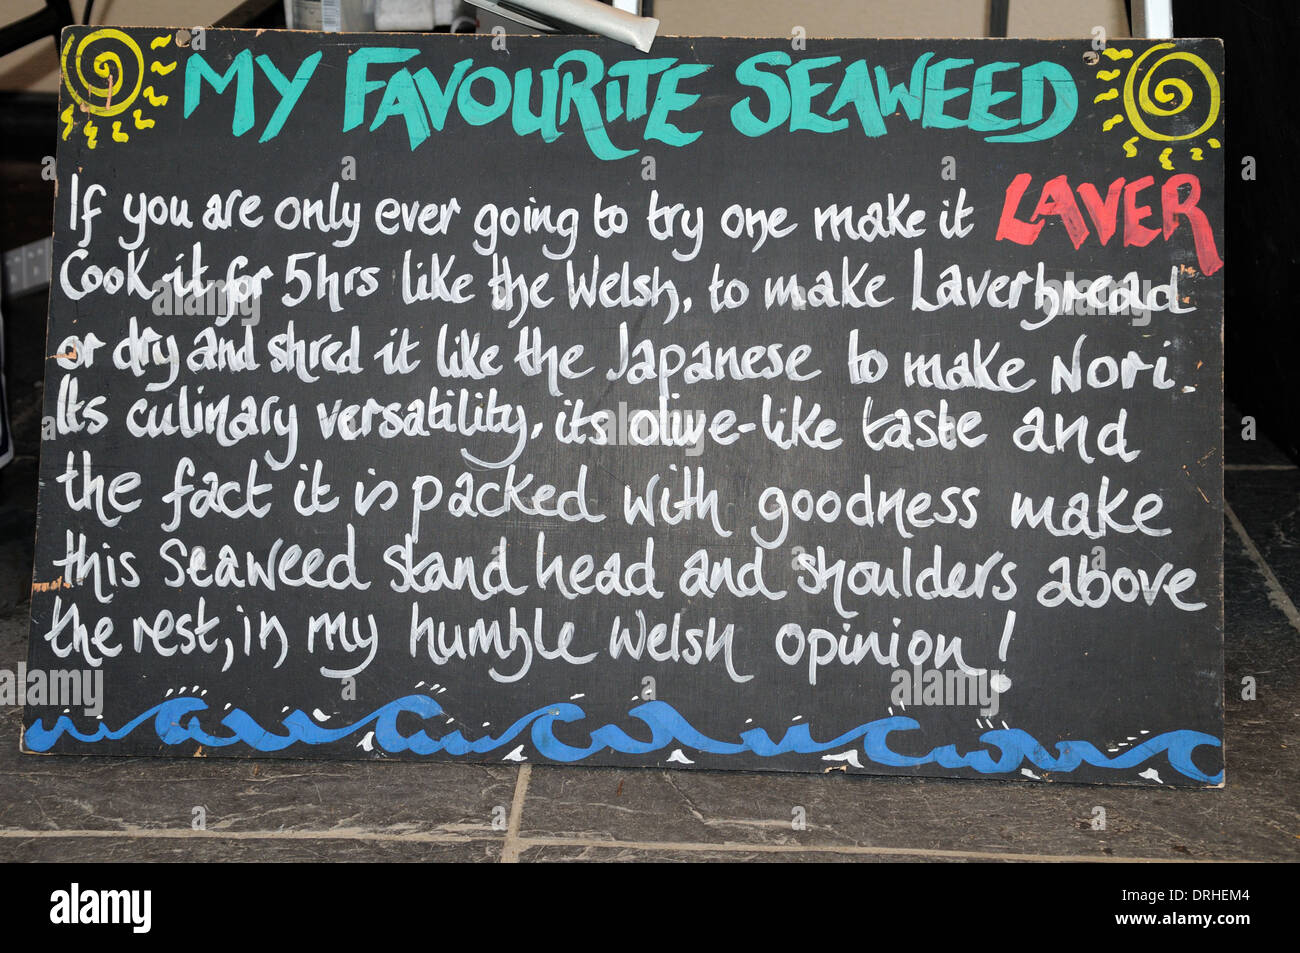 Mon préféré des algues une recette pour faire signer Laverbread gallois Banque D'Images